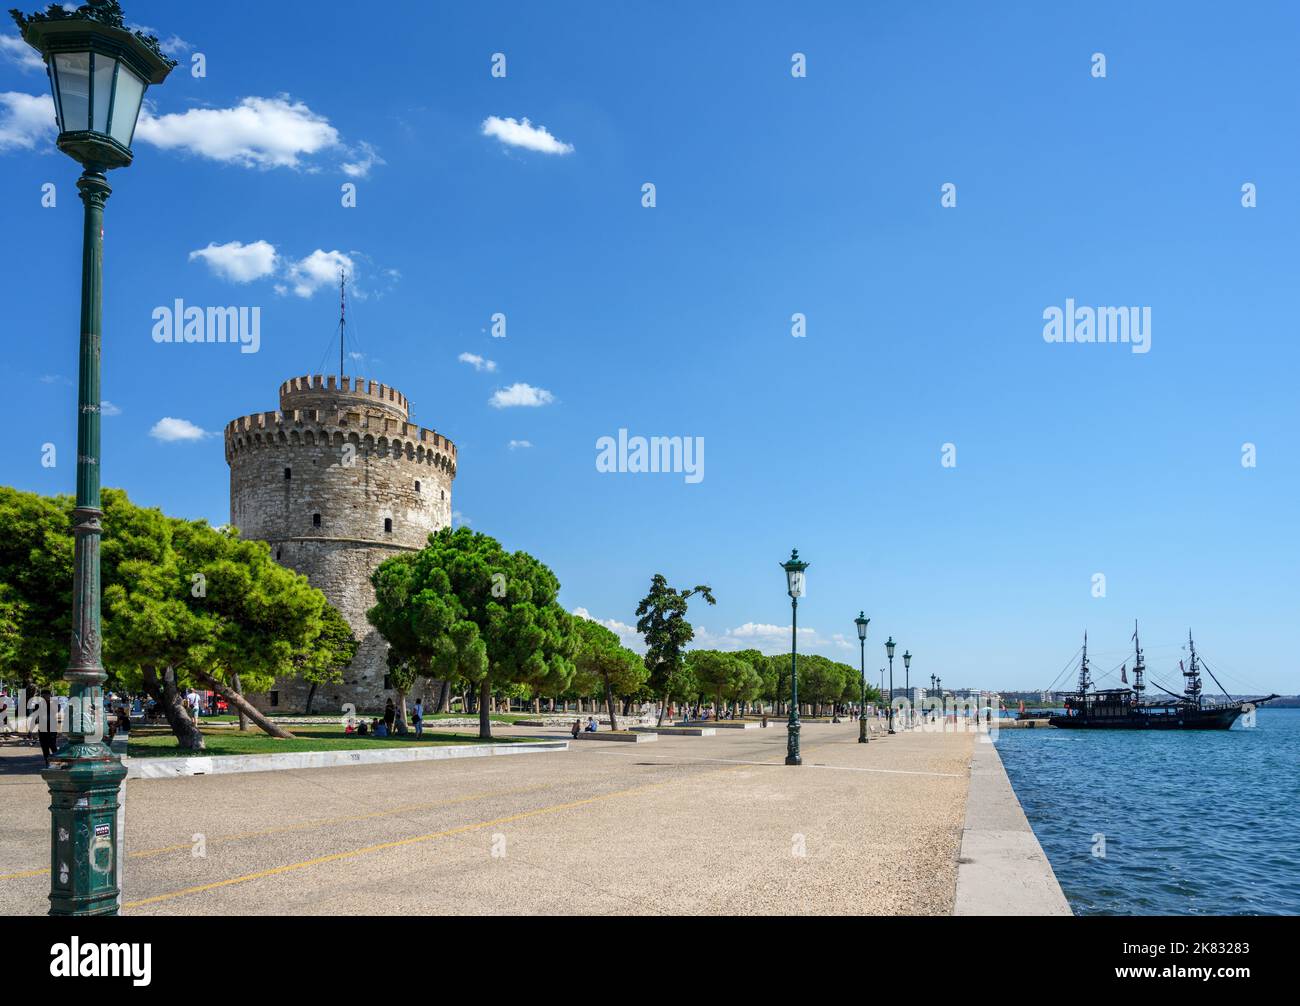 Seafront promenade and the White Tower (Lefkos Pyrgos), Nikis Avenue, Thessaloniki, Macedonia, Greece Stock Photo